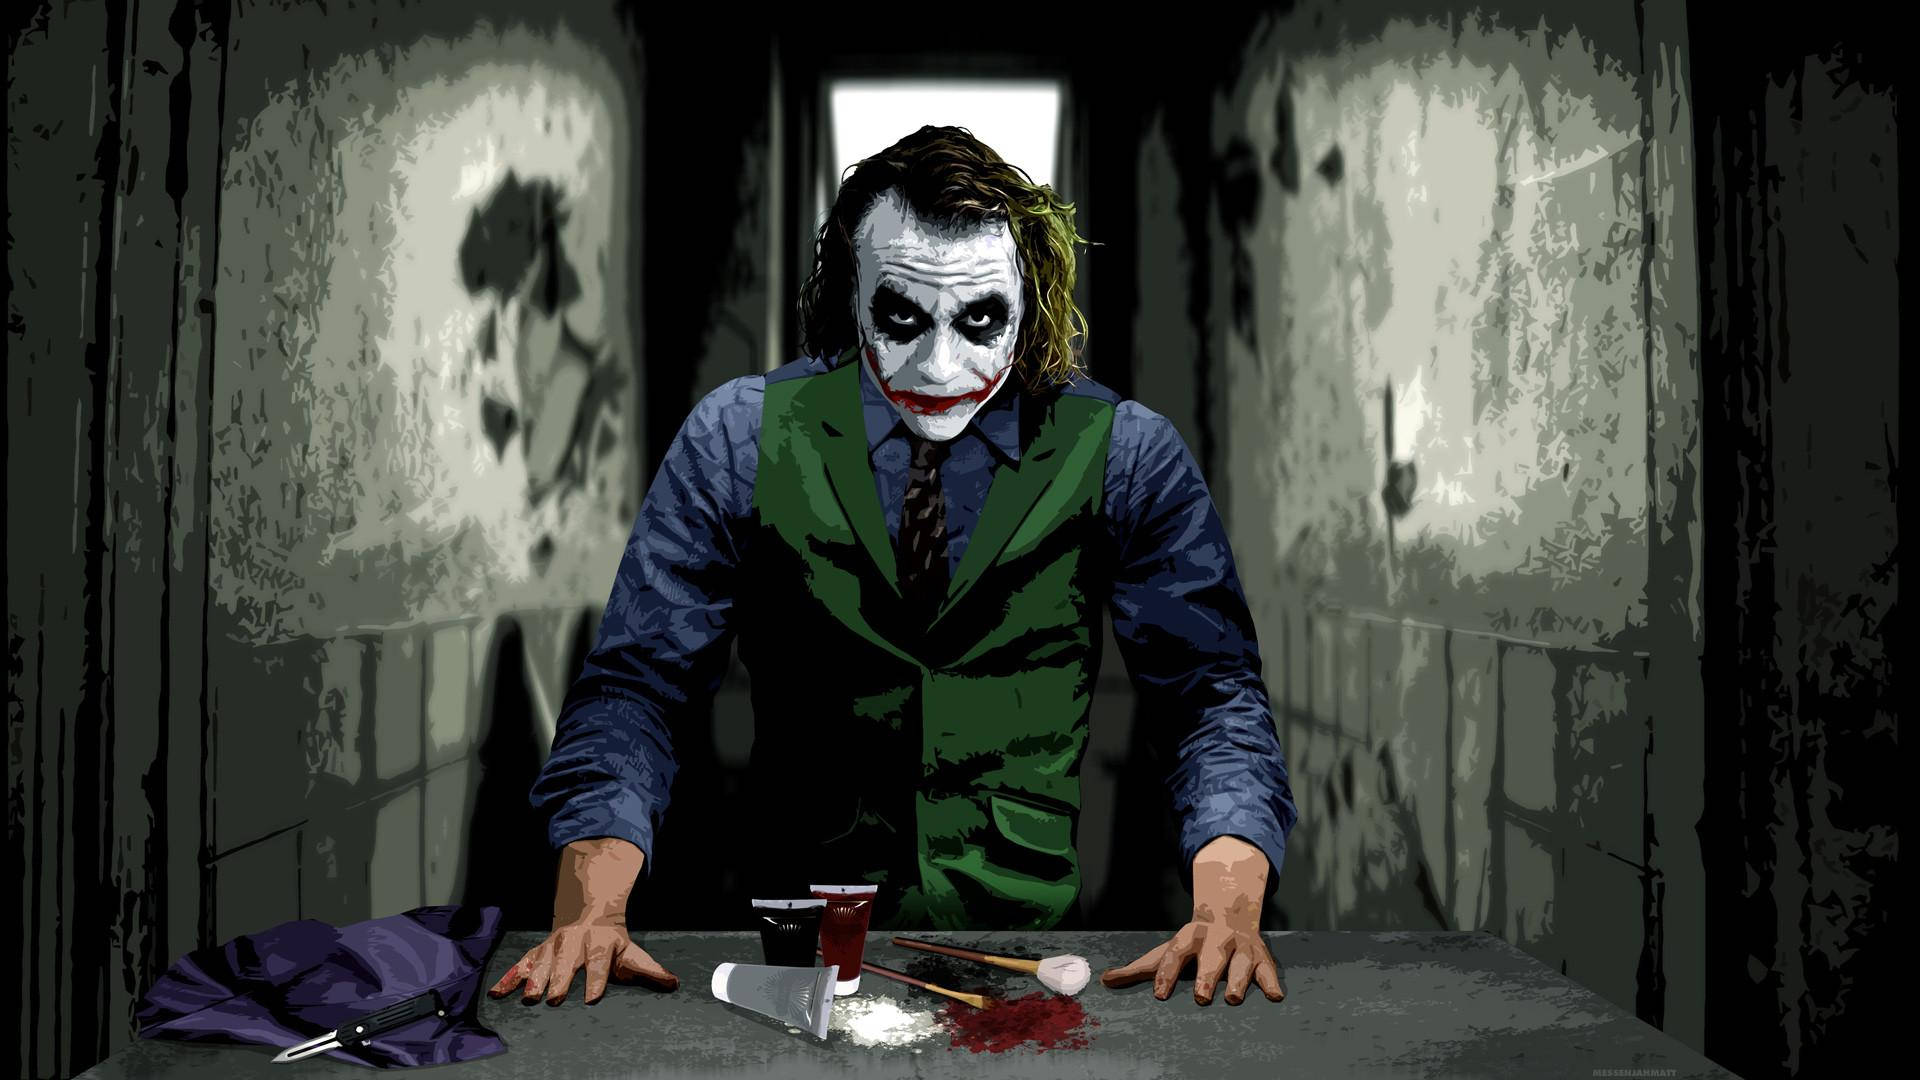 Joker With Make-up 4k Ultra Hd Wallpaper